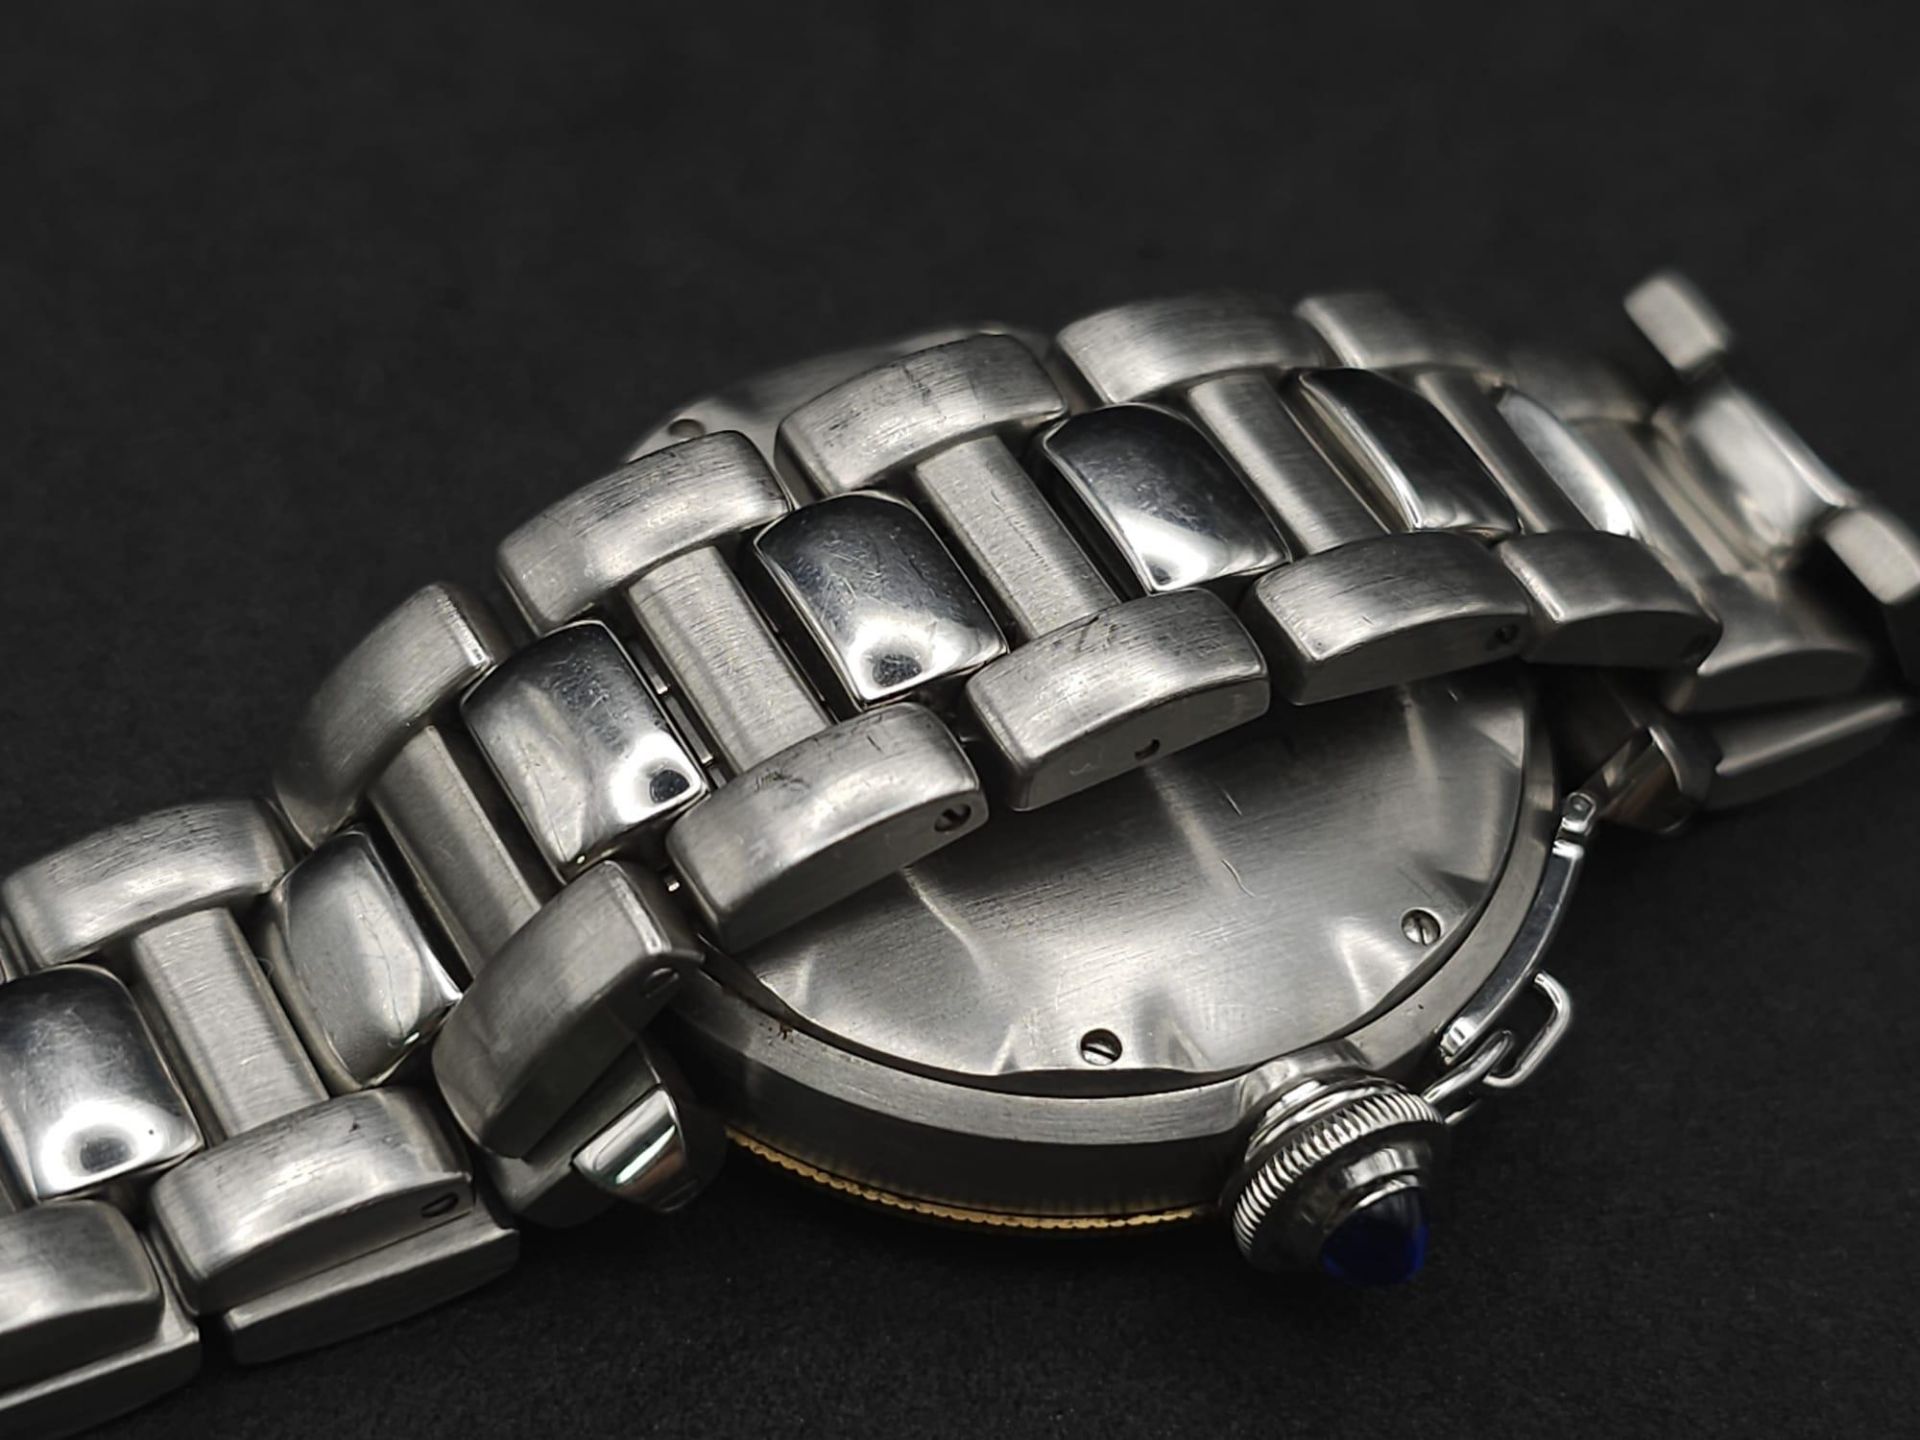 A Cartier de Pasha Automatic Gents Watch. Stainless steel bracelet and case - 38mm. Cream dial - Bild 10 aus 23